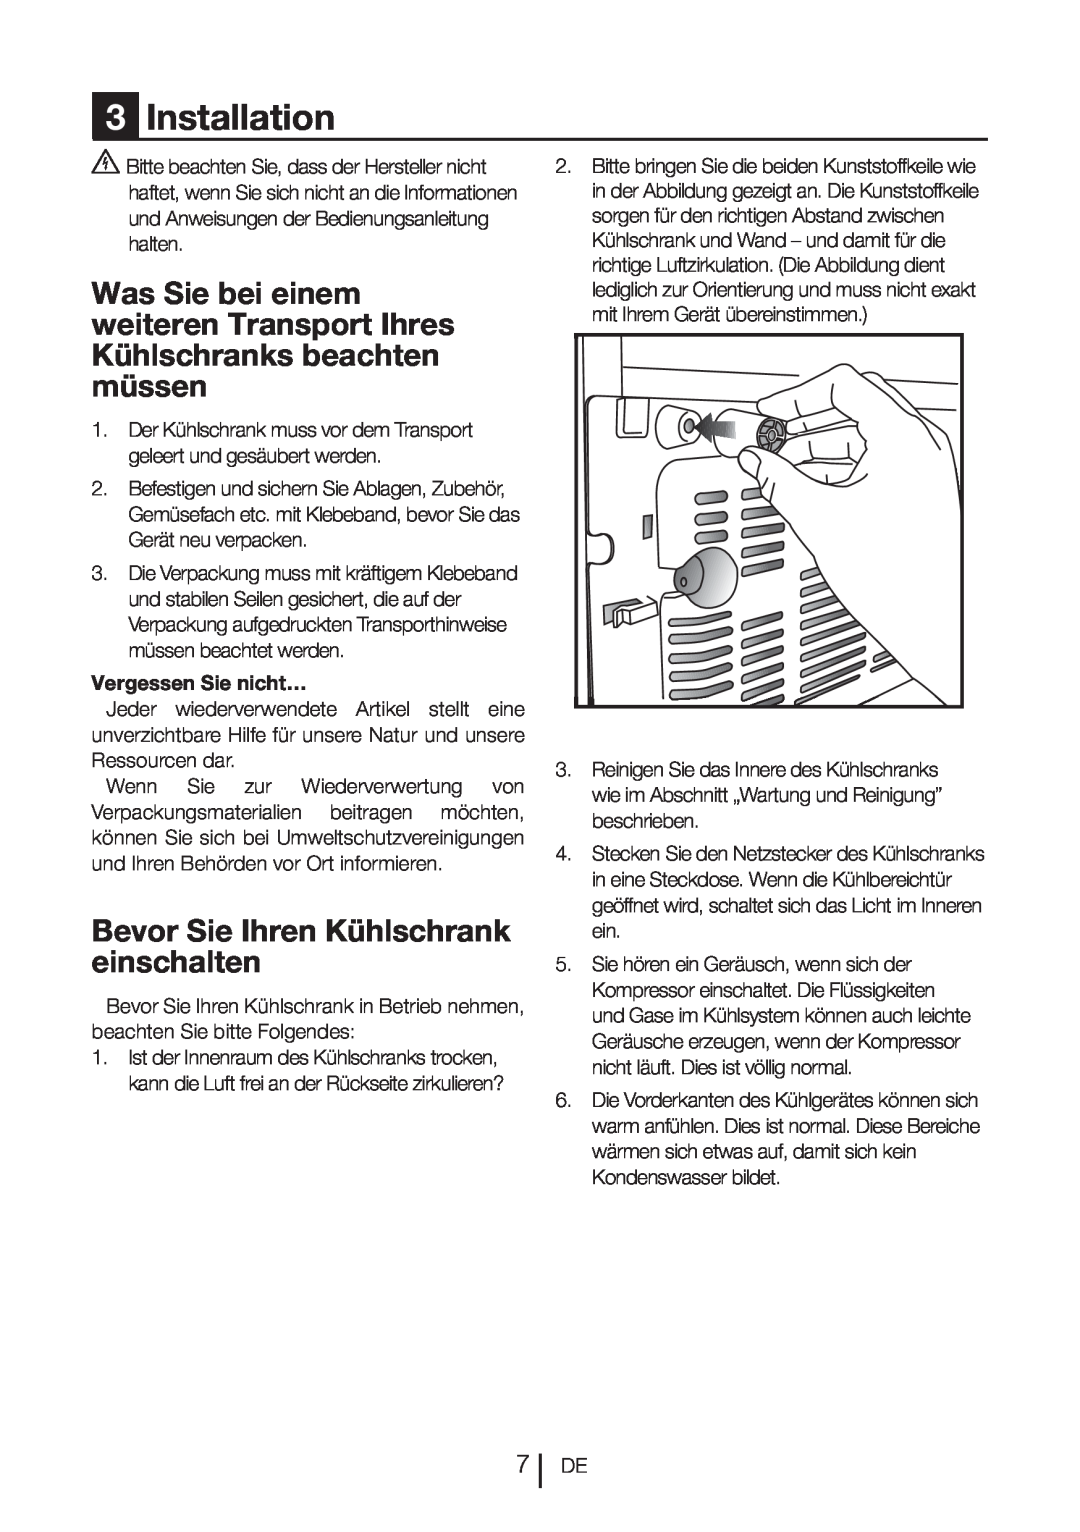 Blomberg DND 9977 PD manual Bevor Sie Ihren Kühlschrank einschalten, 3Installation, Vergessen Sie nicht… 